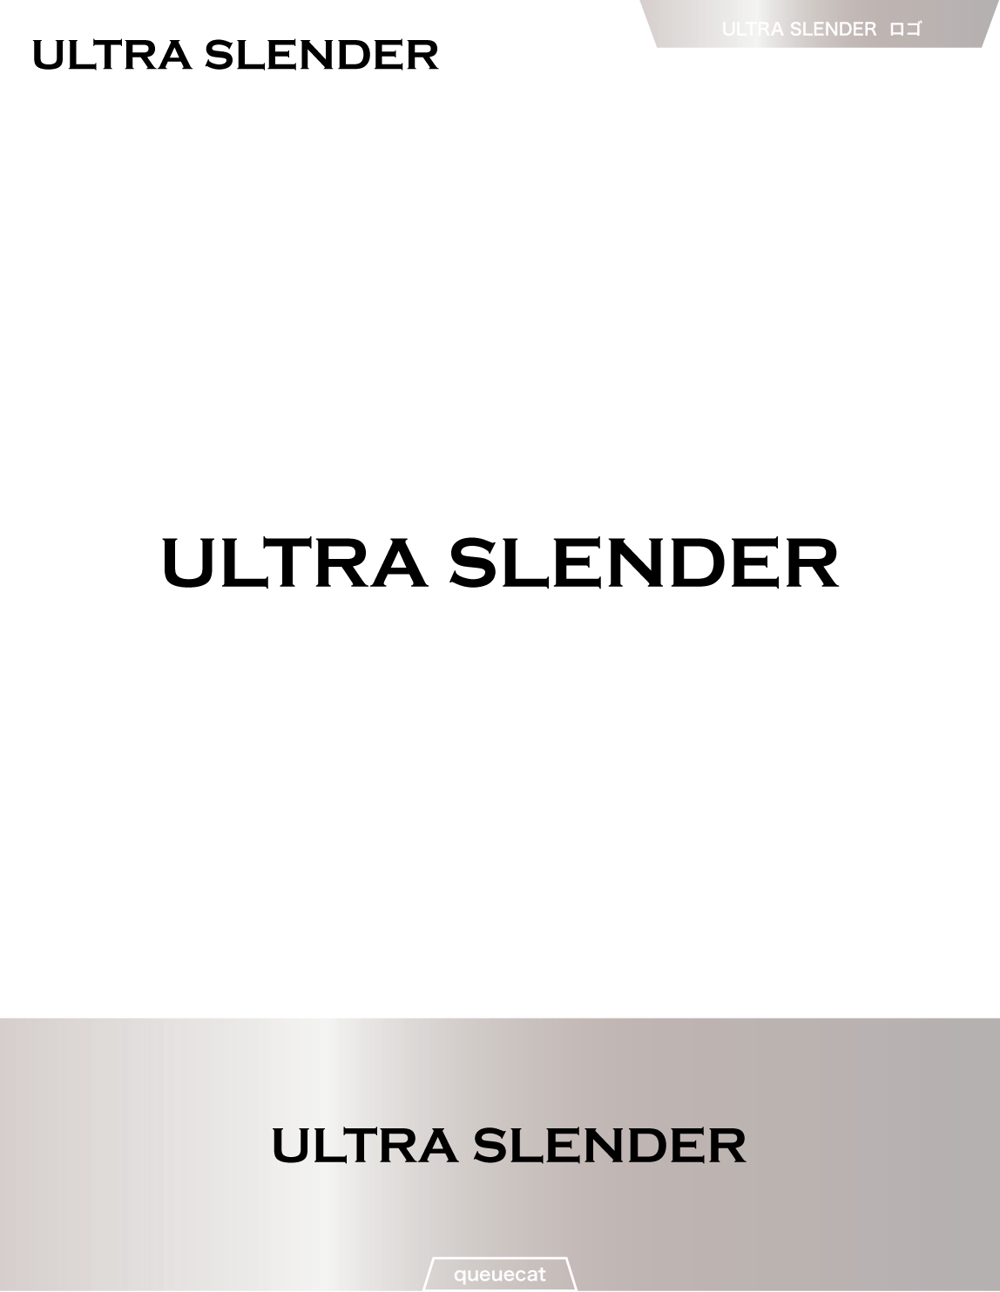 ULTRA SLENDER1_1.jpg